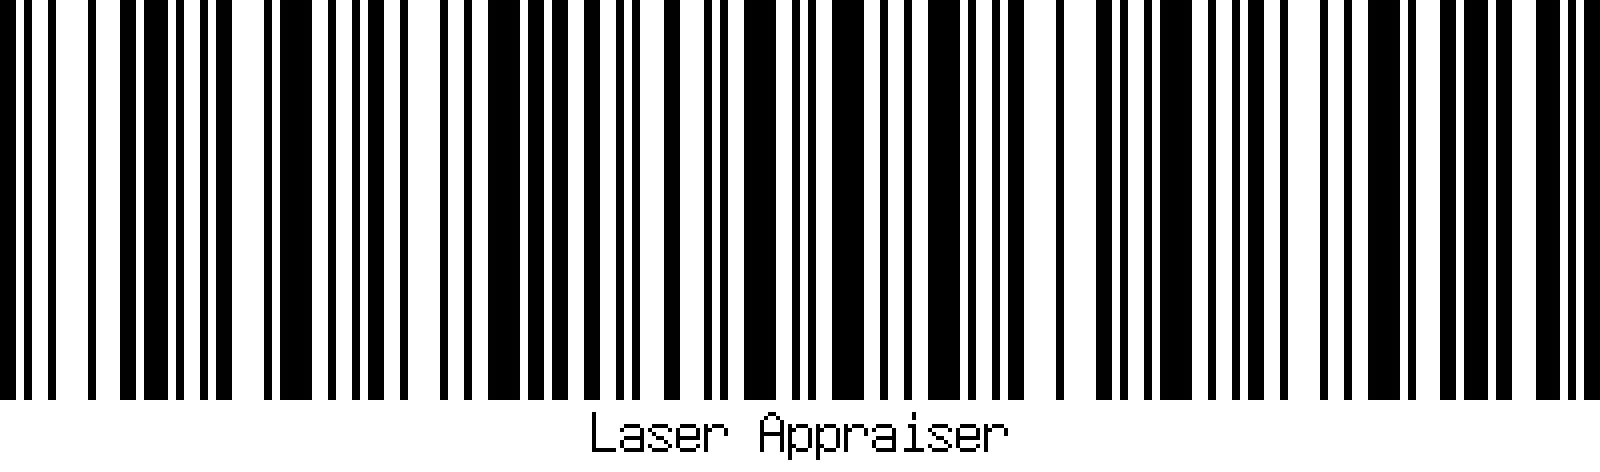 1d barcode laser appraiser